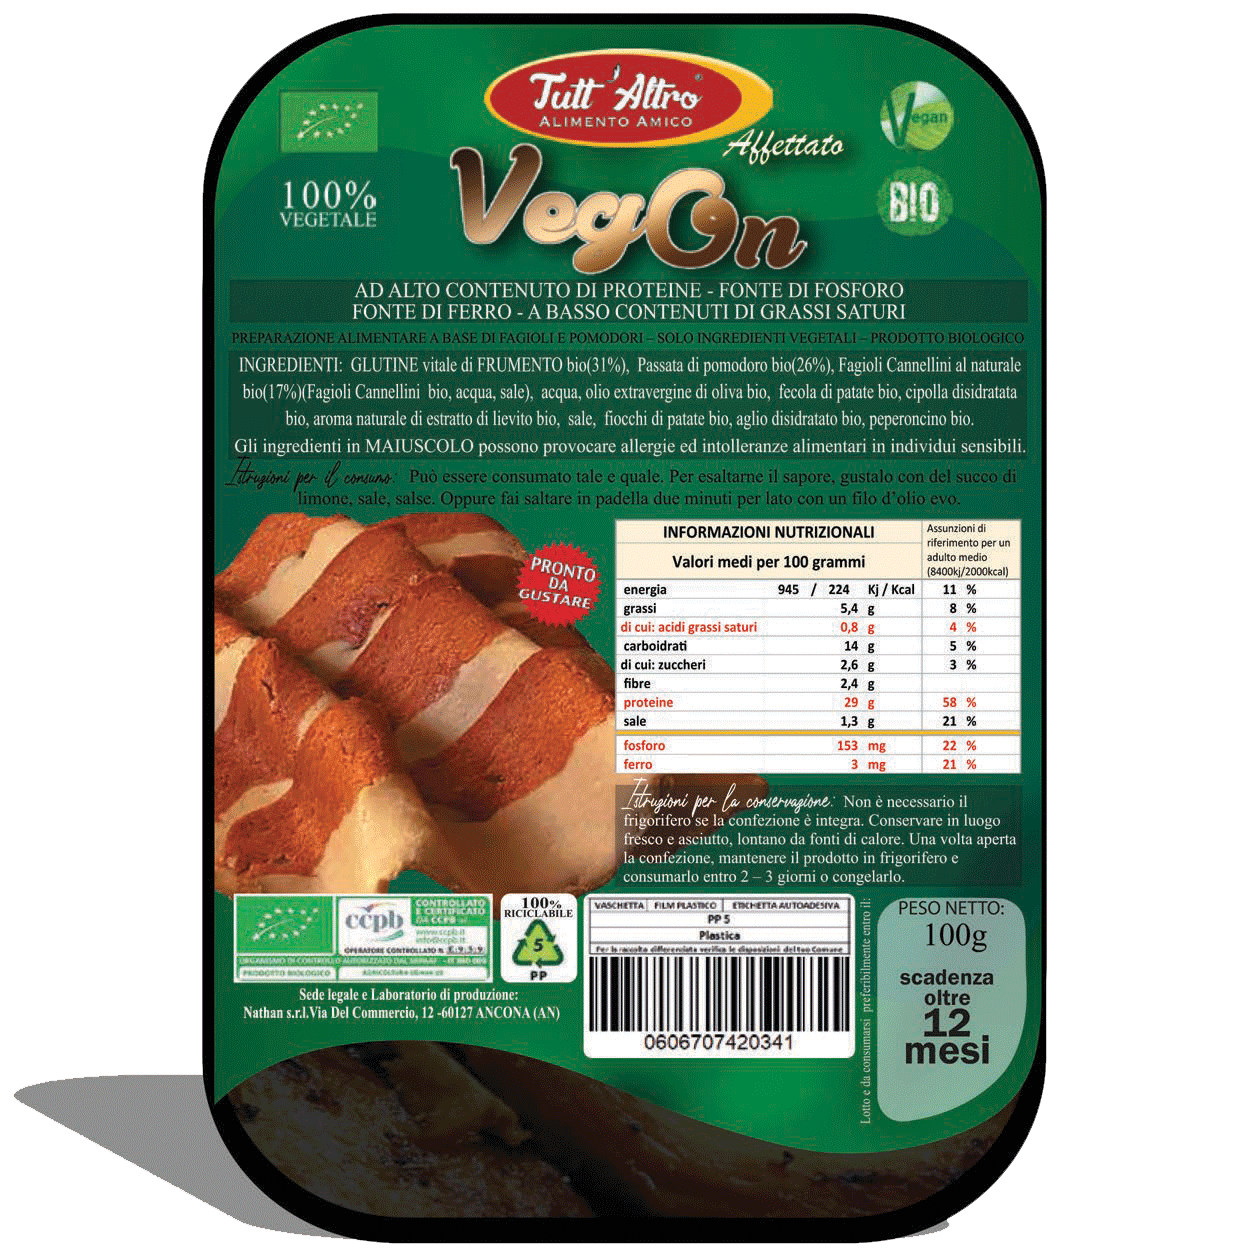 VegOn 100g - Tutt'Altro - Alimenti 100% Veg&Bio